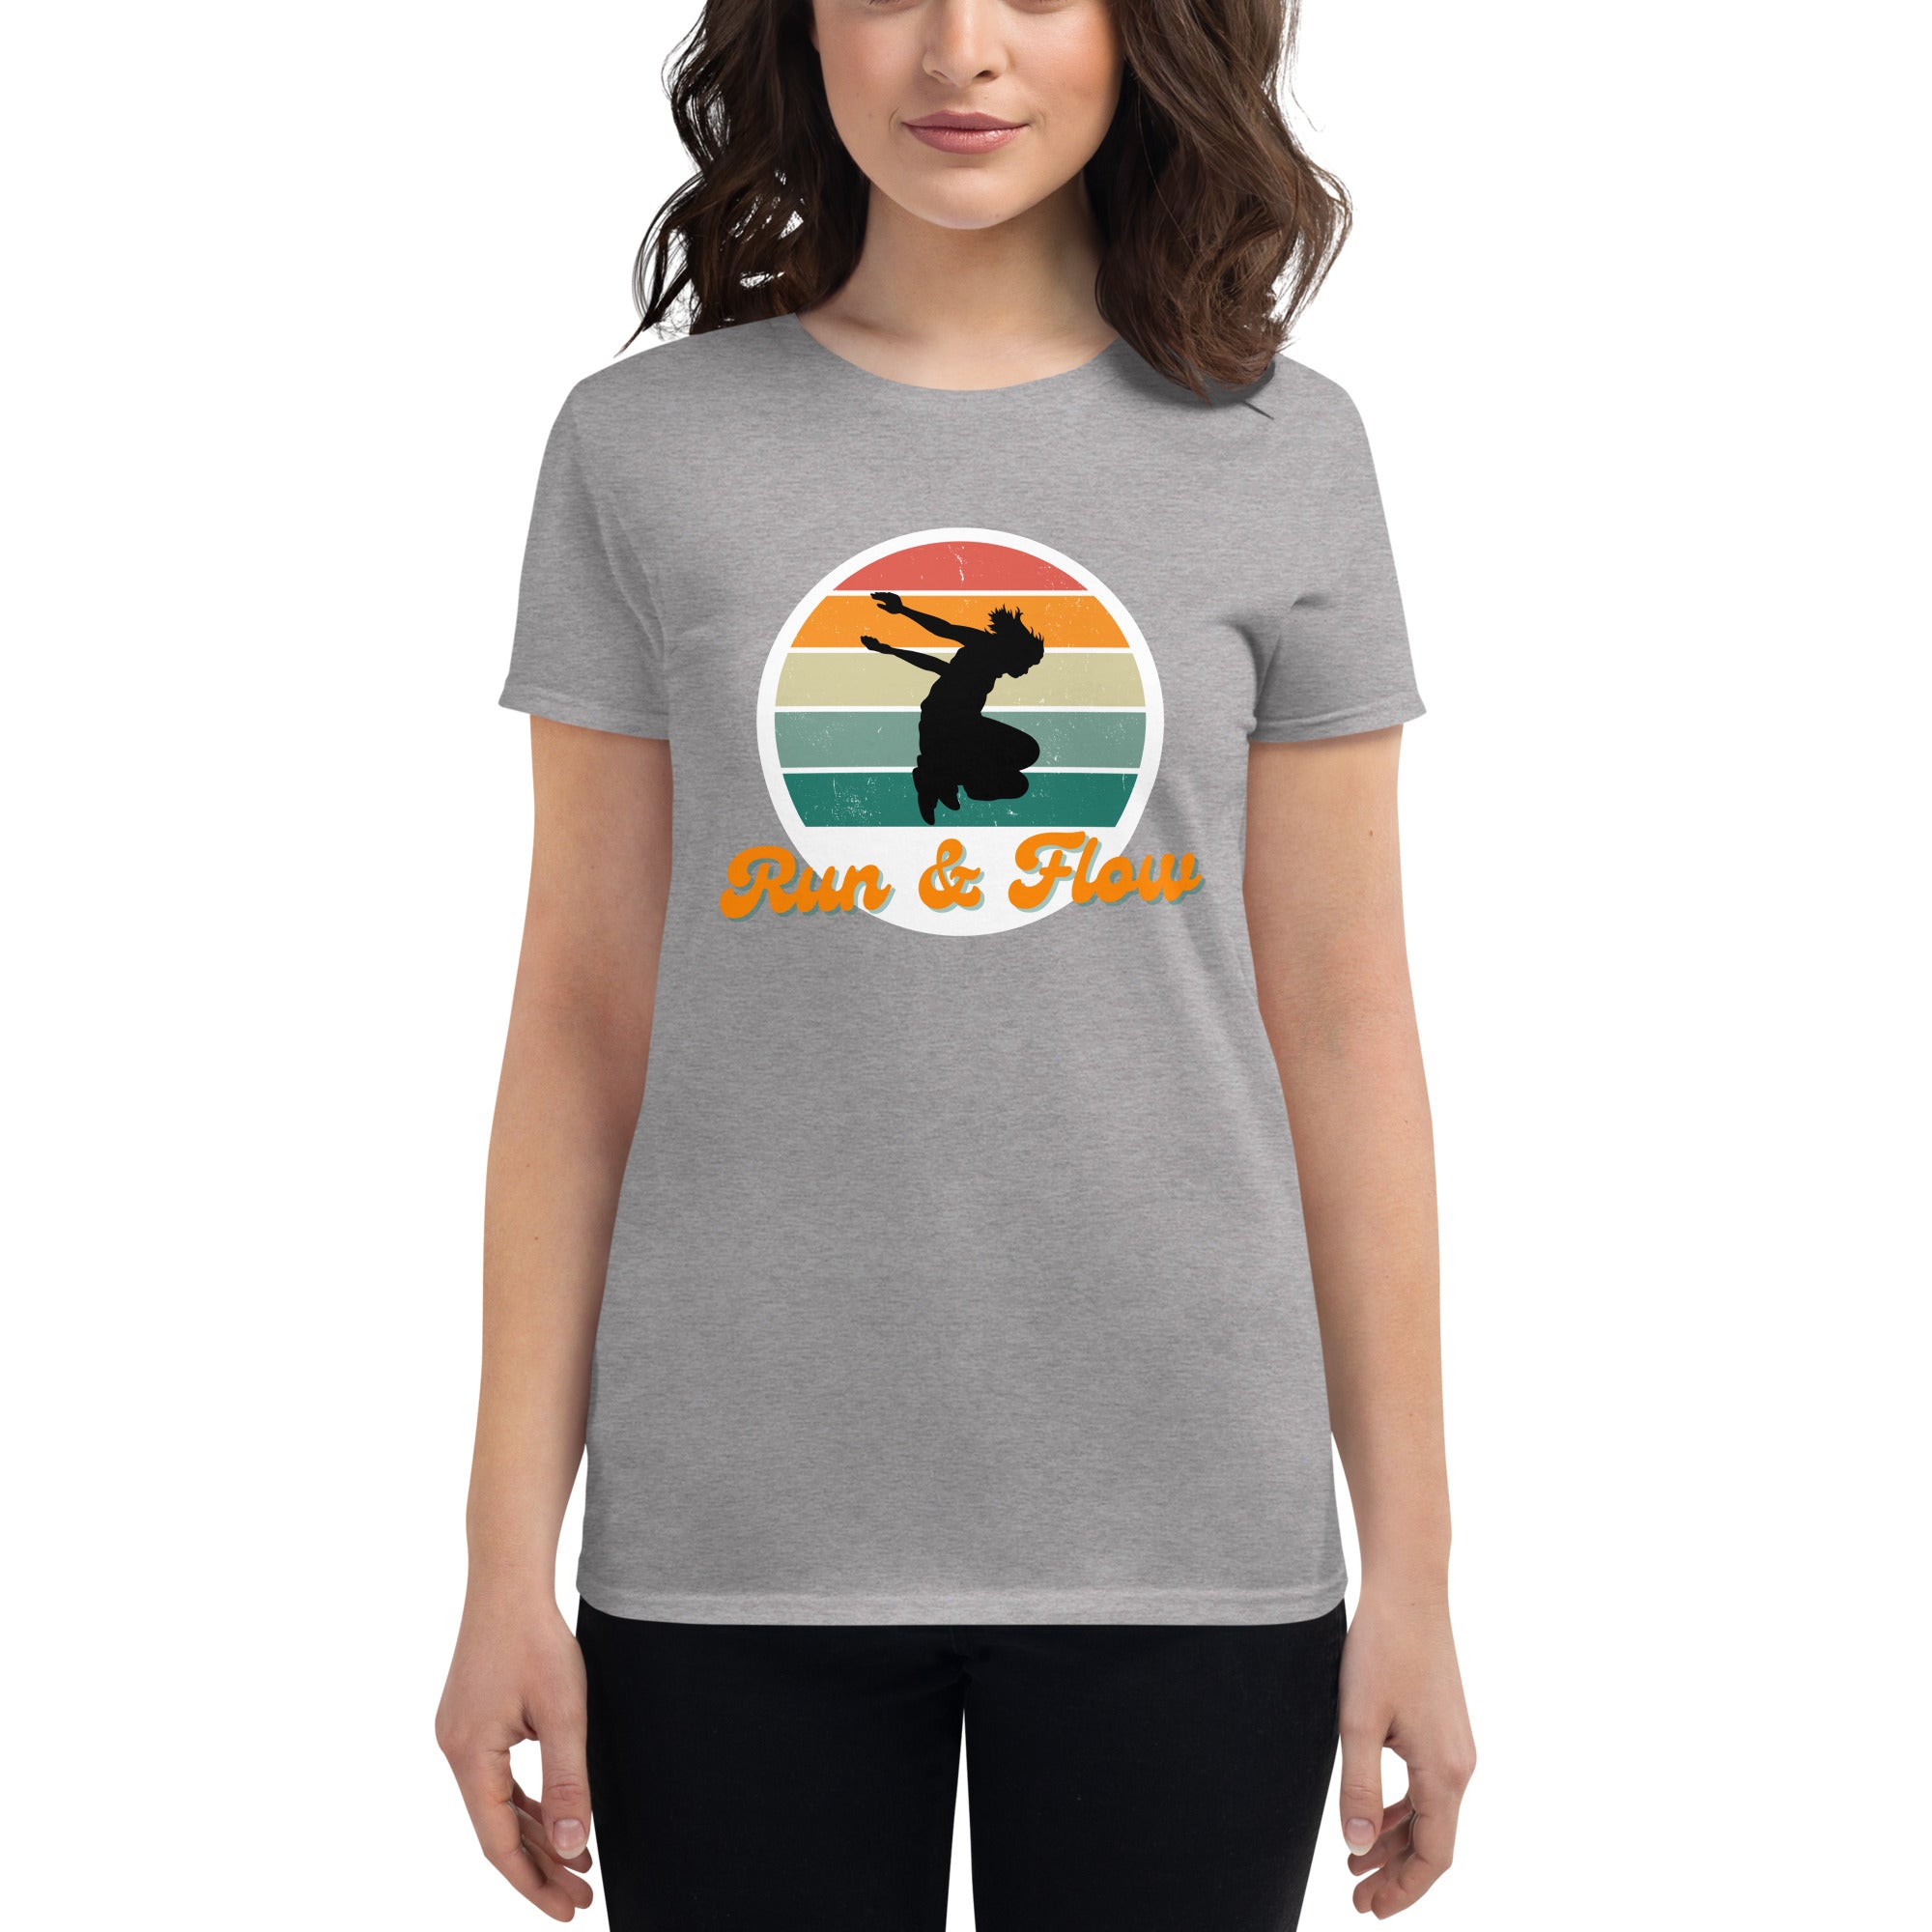 Run & Flow Women's Fitted T-Shirt